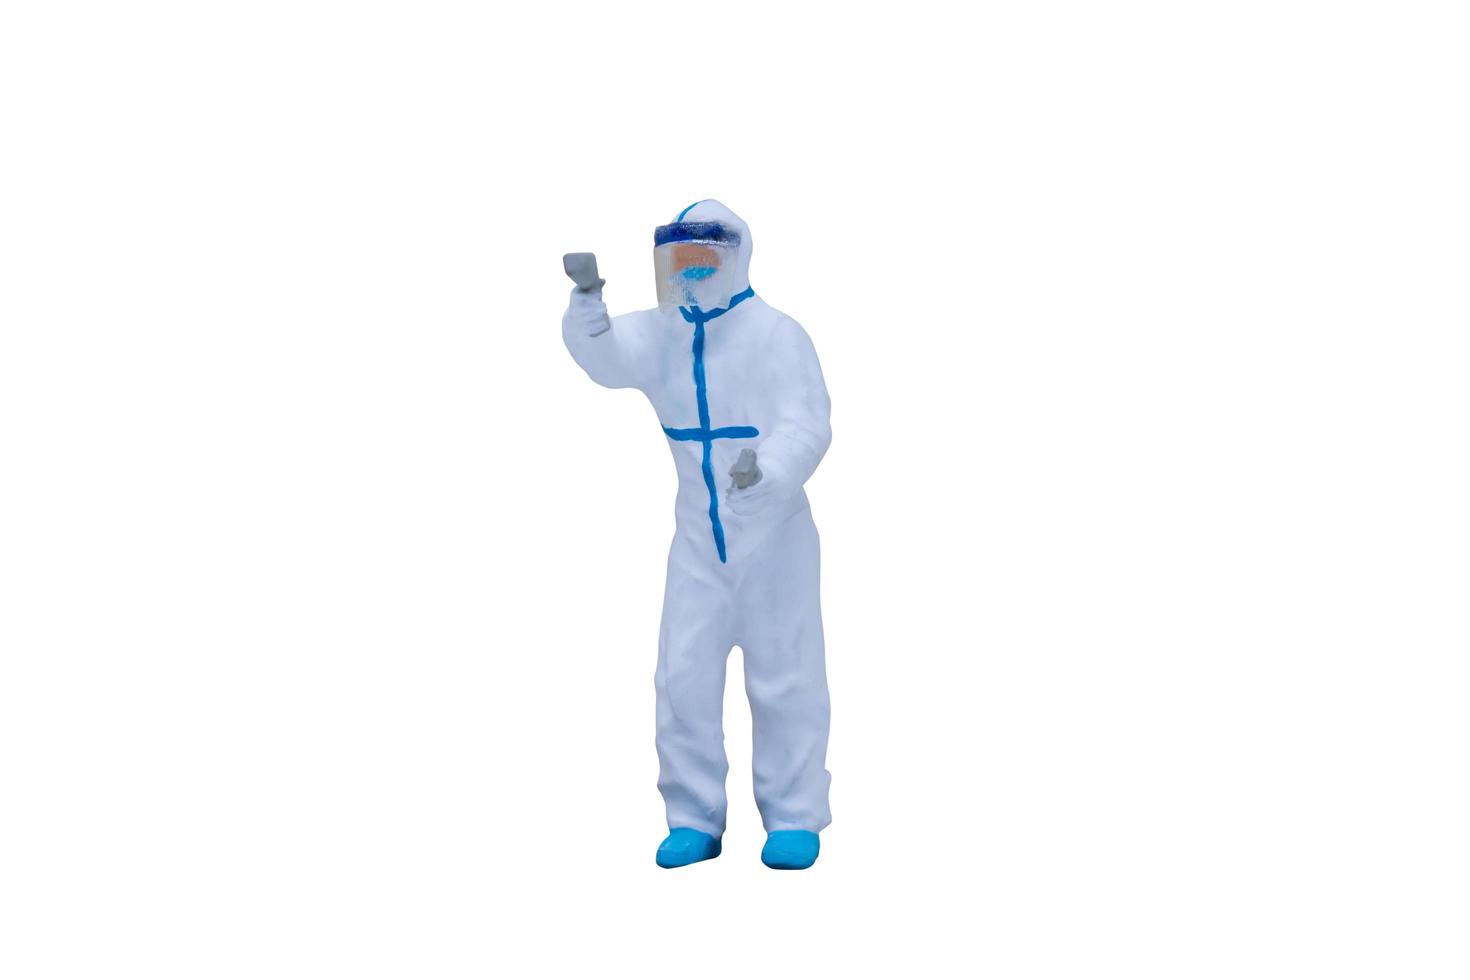 miniatuur arts met beschermende pakken geïsoleerd op een witte achtergrond foto